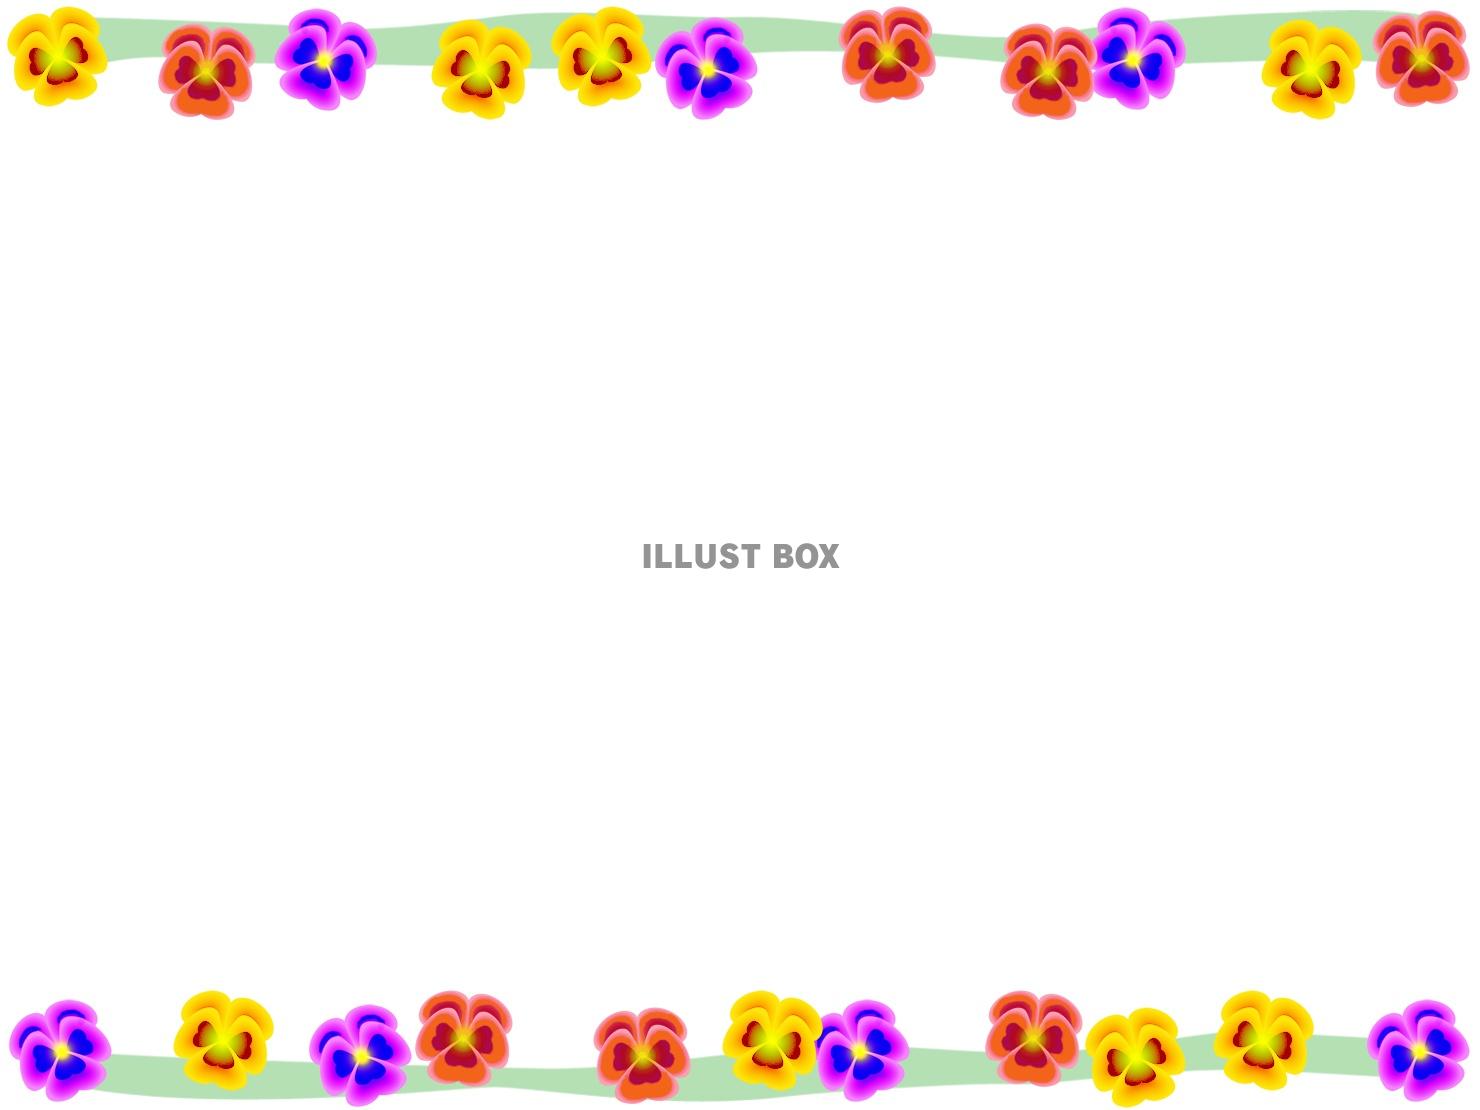 無料イラスト パンジーのフレーム カラフルな花の枠素材